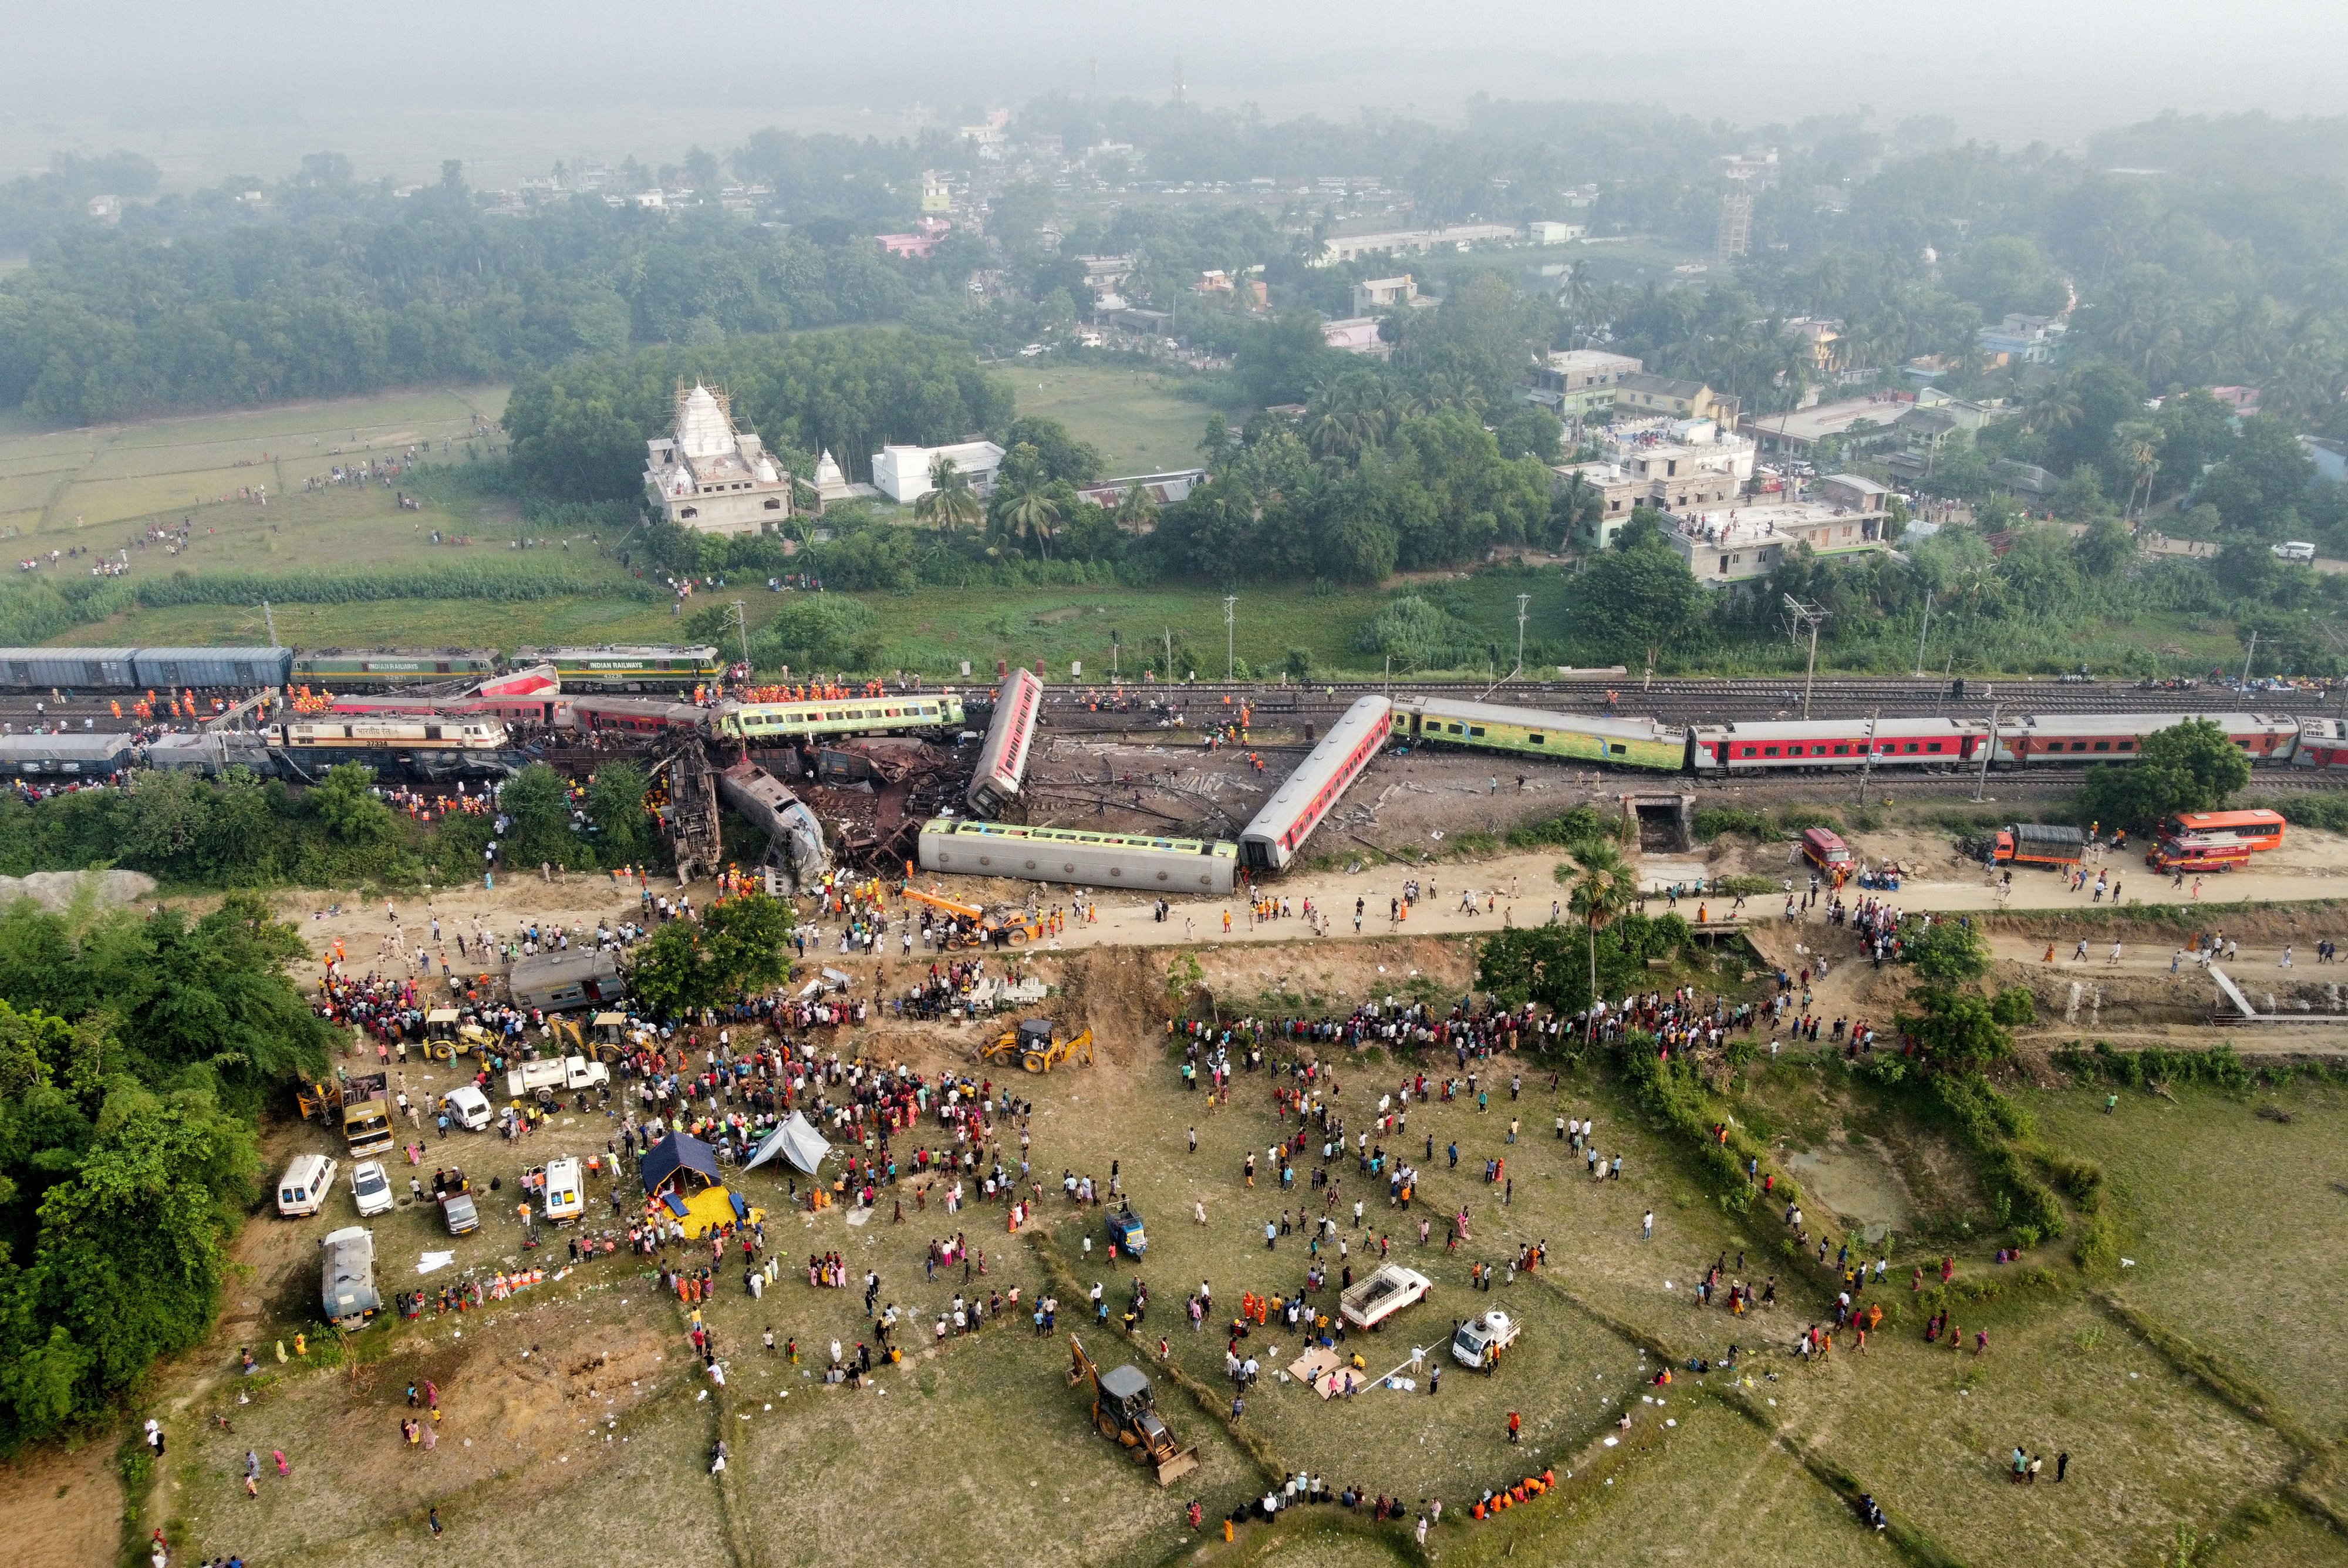 Tragedia en la India: un fallo humano podría ser la causa del choque de trenes que dejó casi 300 muertos. (REUTERS)